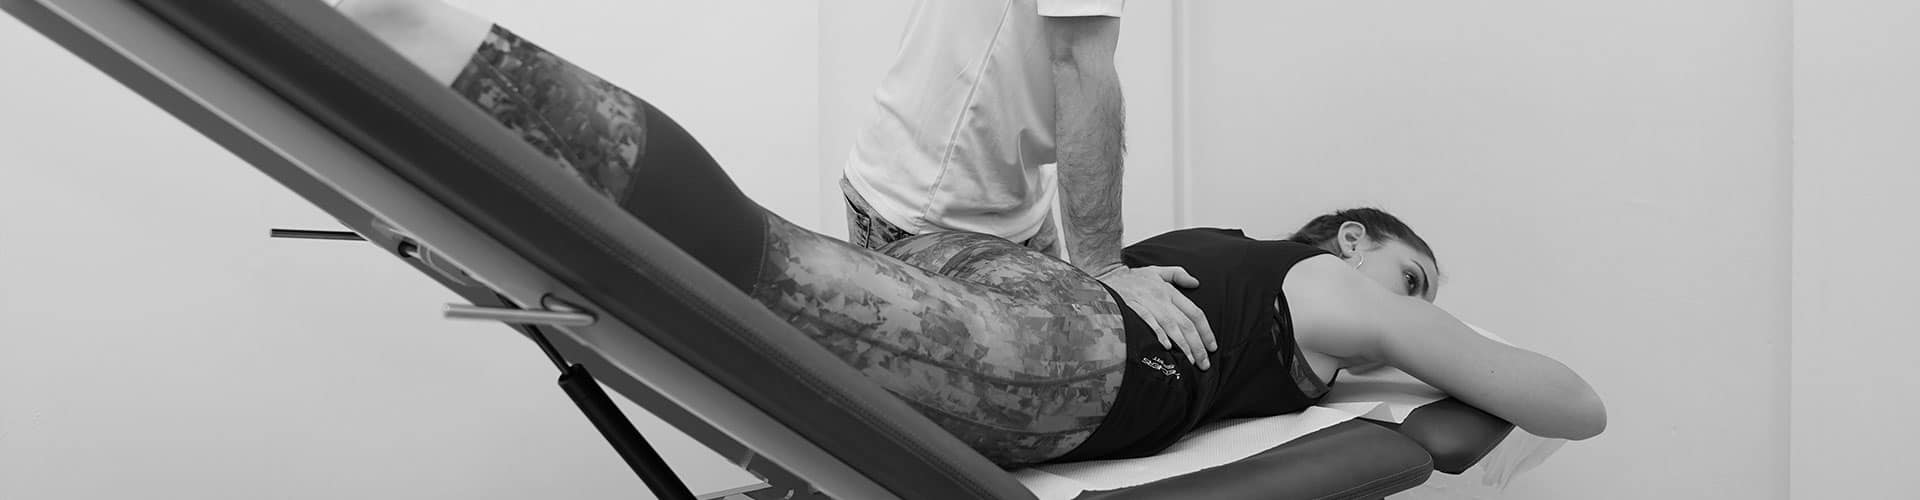 שיטת מקנזי לטיפול בכאבי גב תחתון ופריצות דיסק